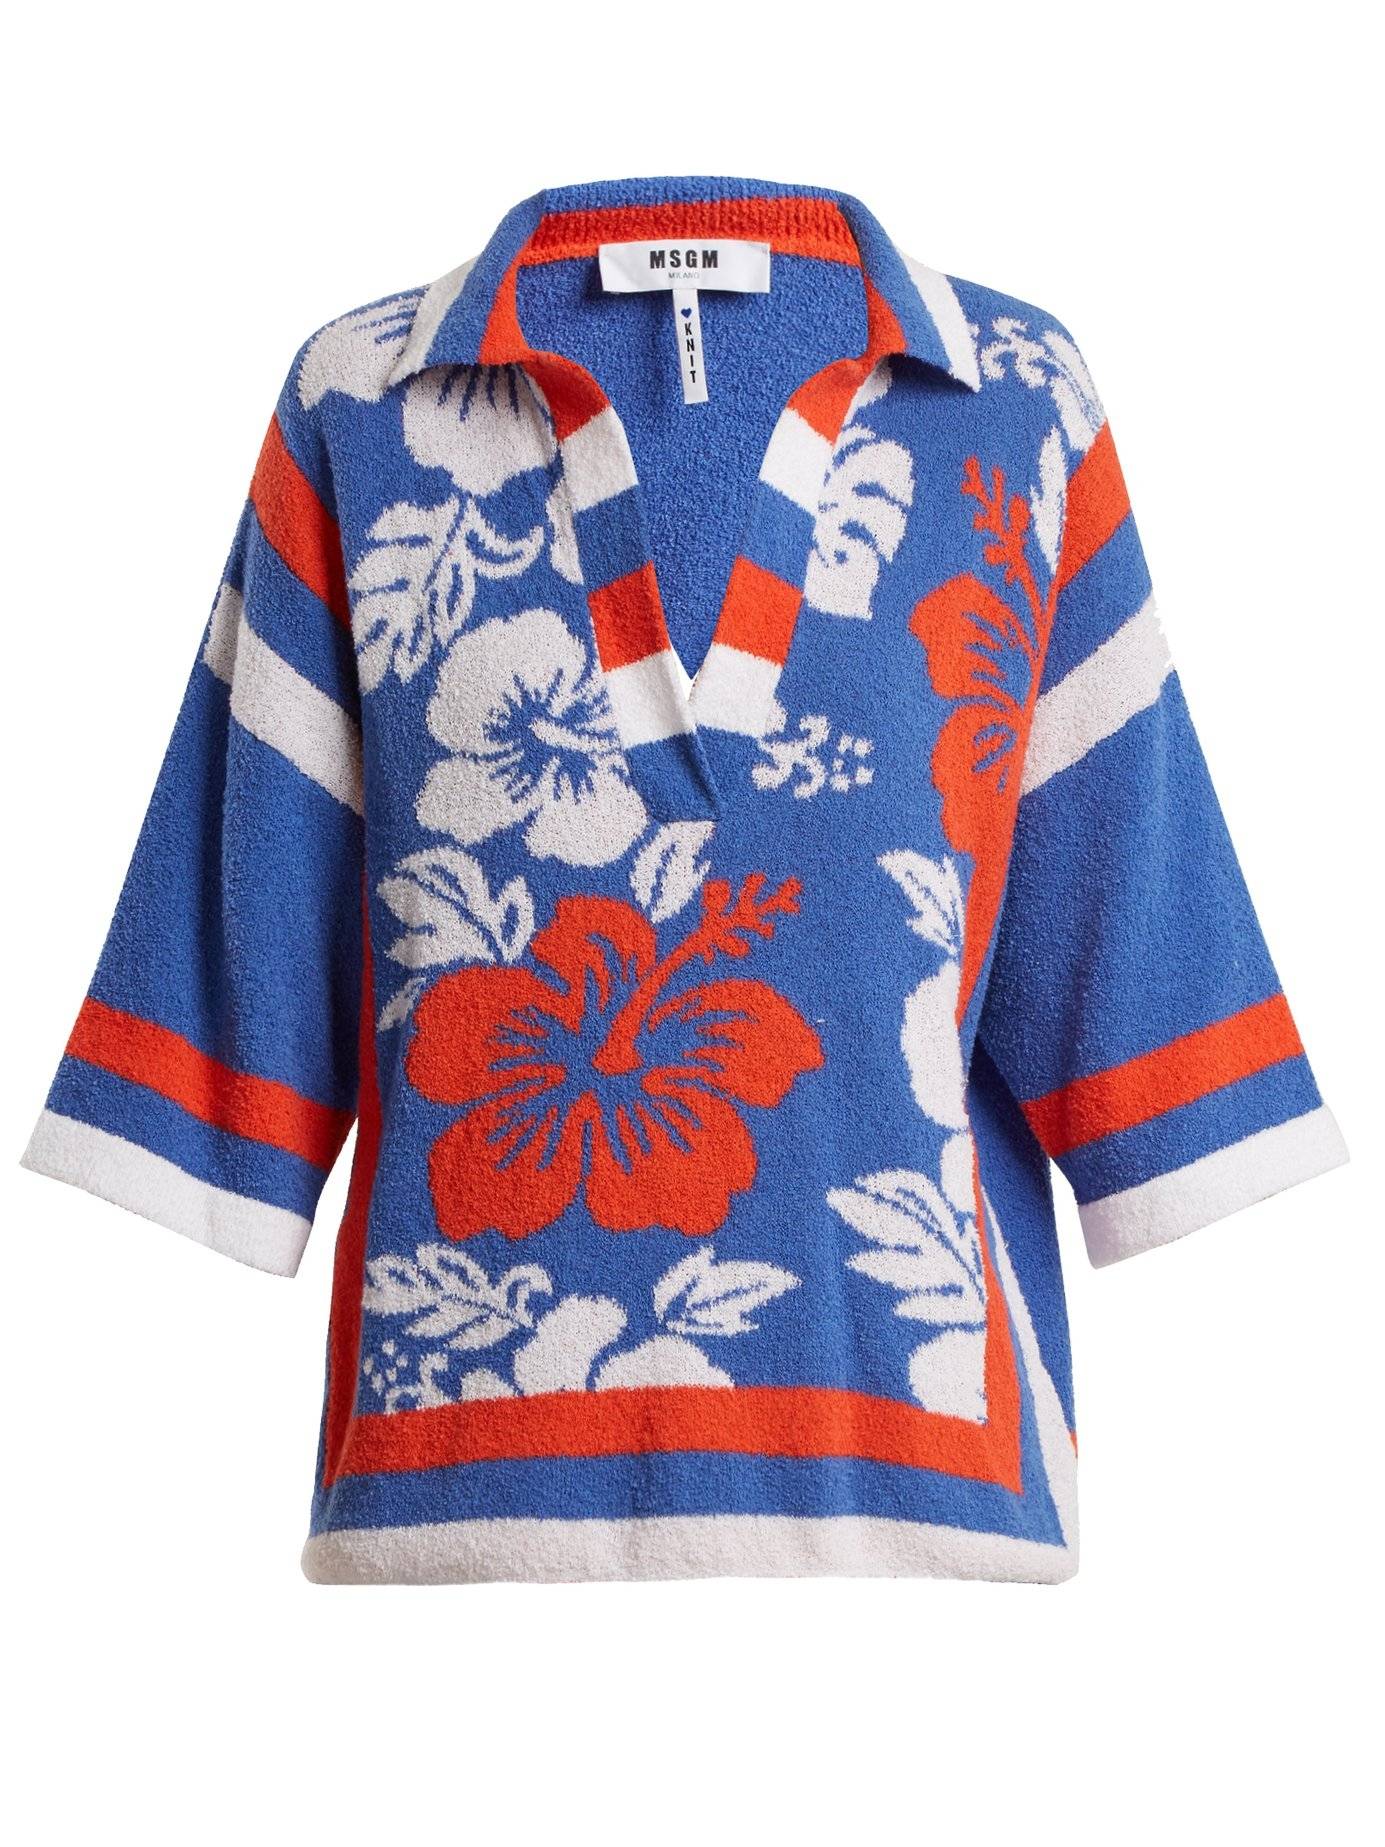 Гавайские рубашки и панамы: мода на туристический стиль